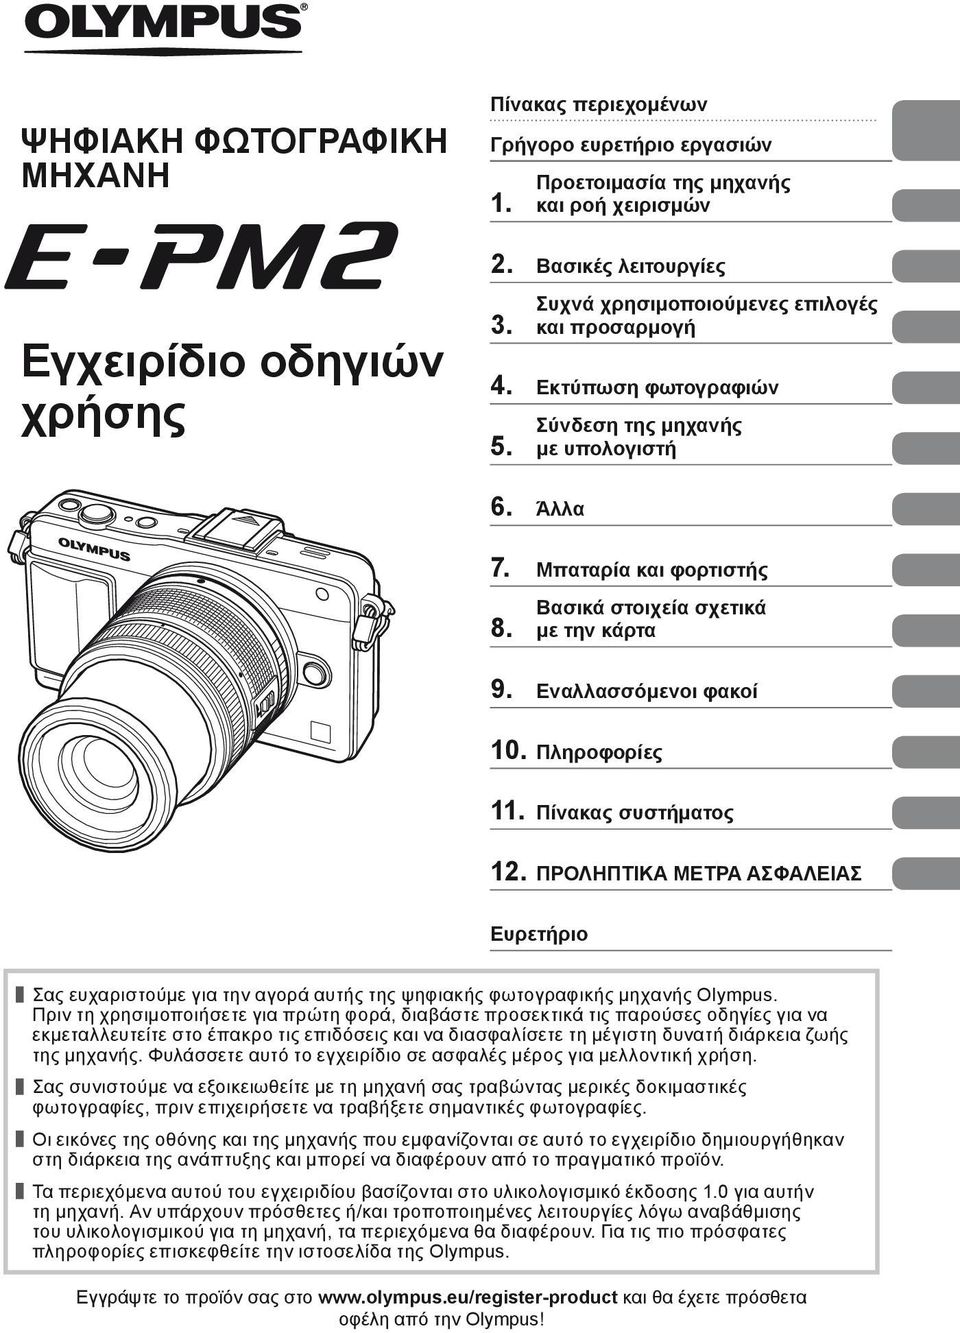 Εναλλασσόμενοι φακοί 0. Πληροφορίες. Πίνακας συστήματος. ΠΡΟΛΗΠΤΙΚΑ ΜΕΤΡΑ ΑΣΦΑΛΕΙΑΣ Ευρετήριο Σας ευχαριστούμε για την αγορά αυτής της ψηφιακής φωτογραφικής μηχανής Olympus.